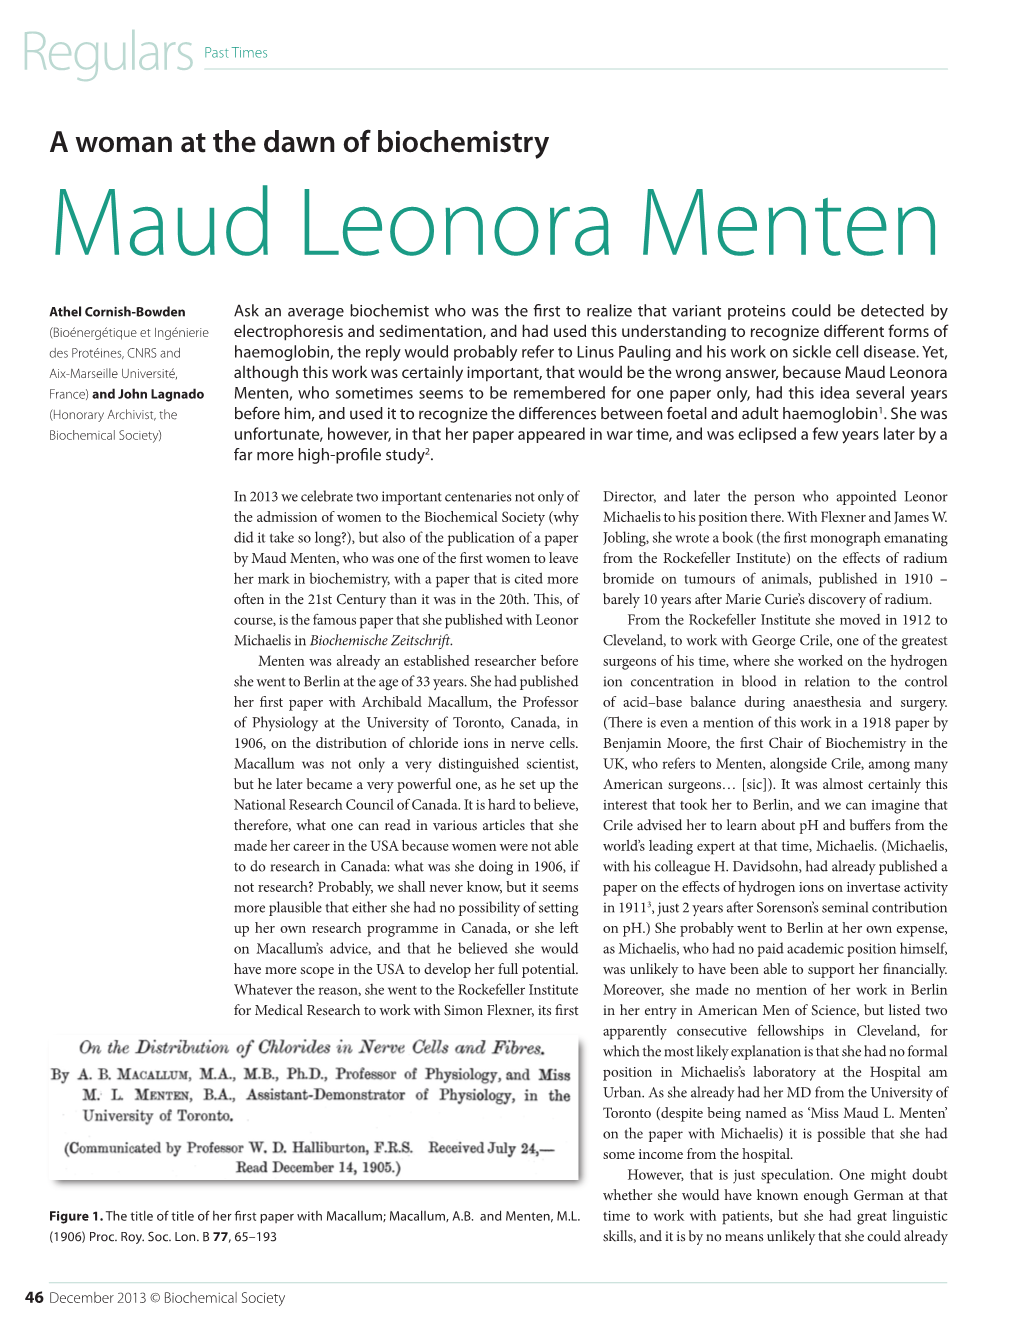 Maud Leonora Menten